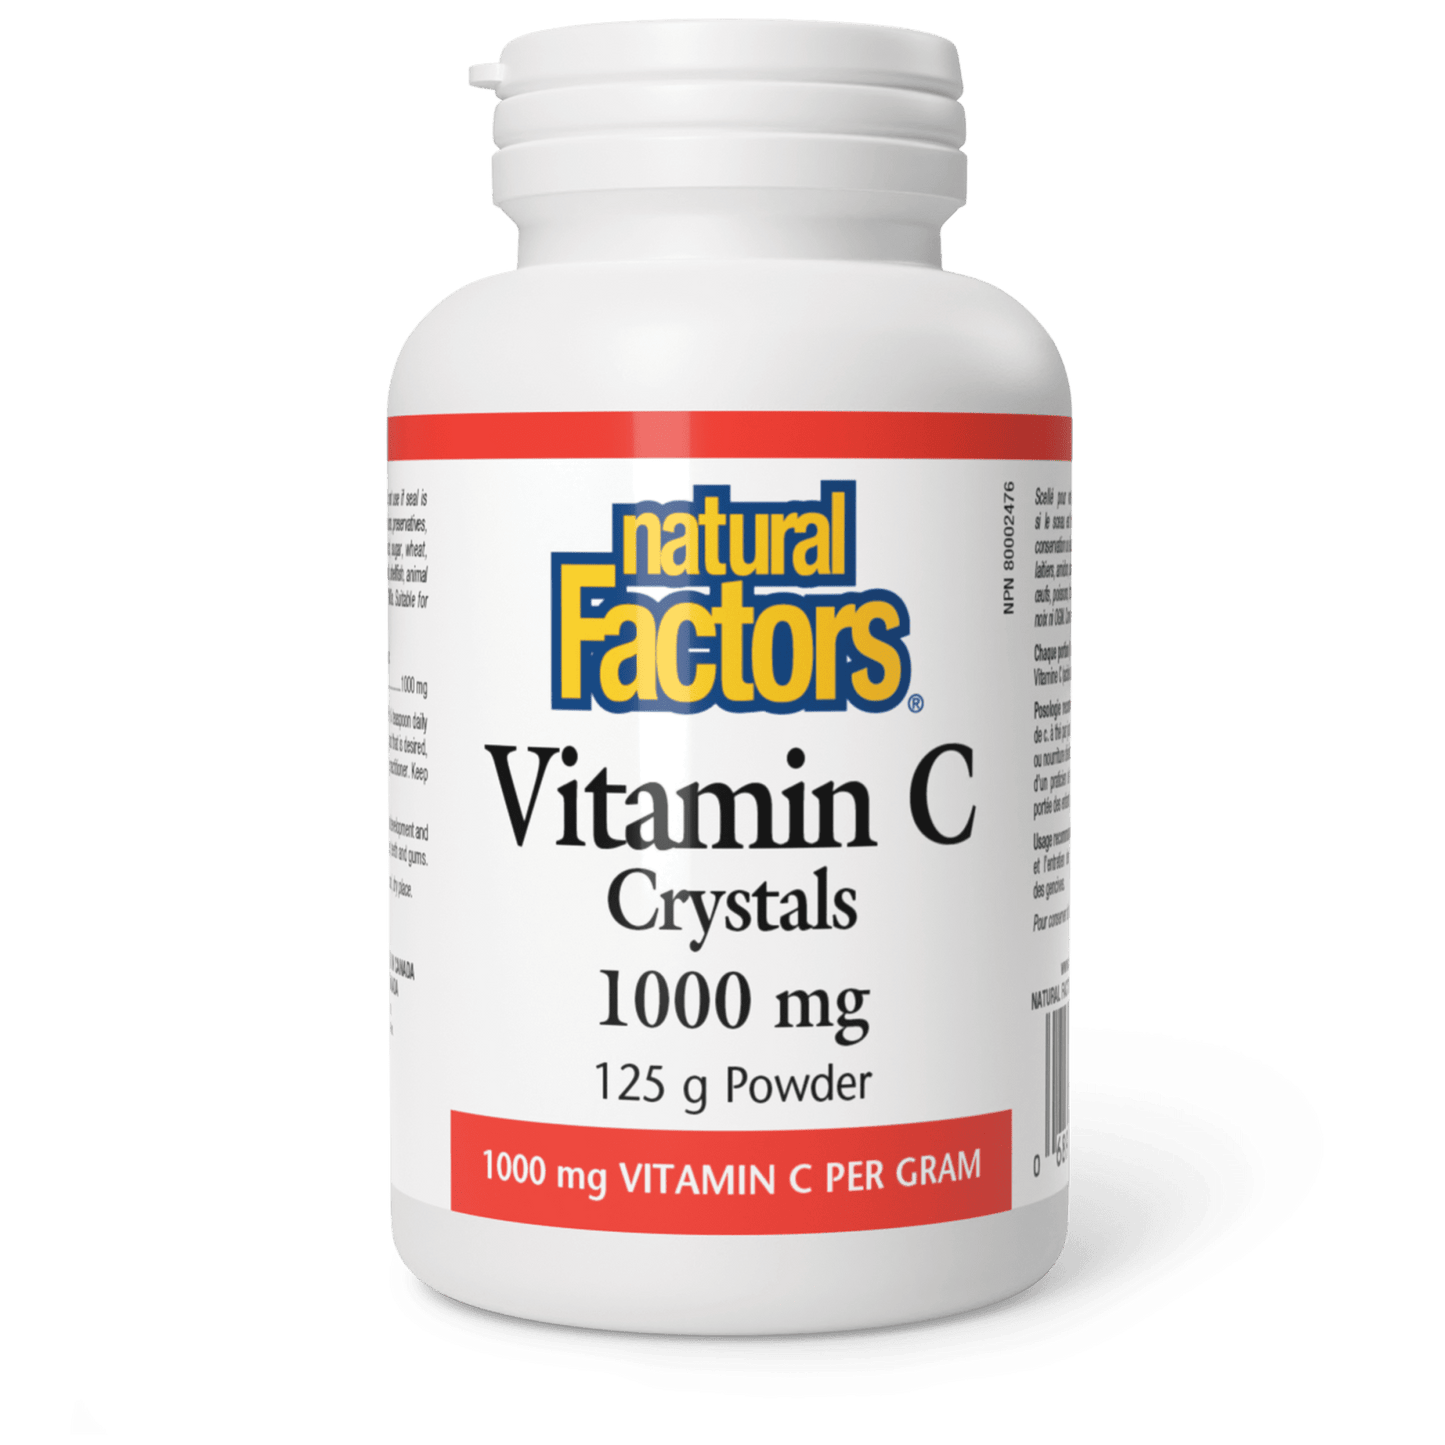 Vitamin C Crystals 1000 mg, Natural Factors|v|image|1360